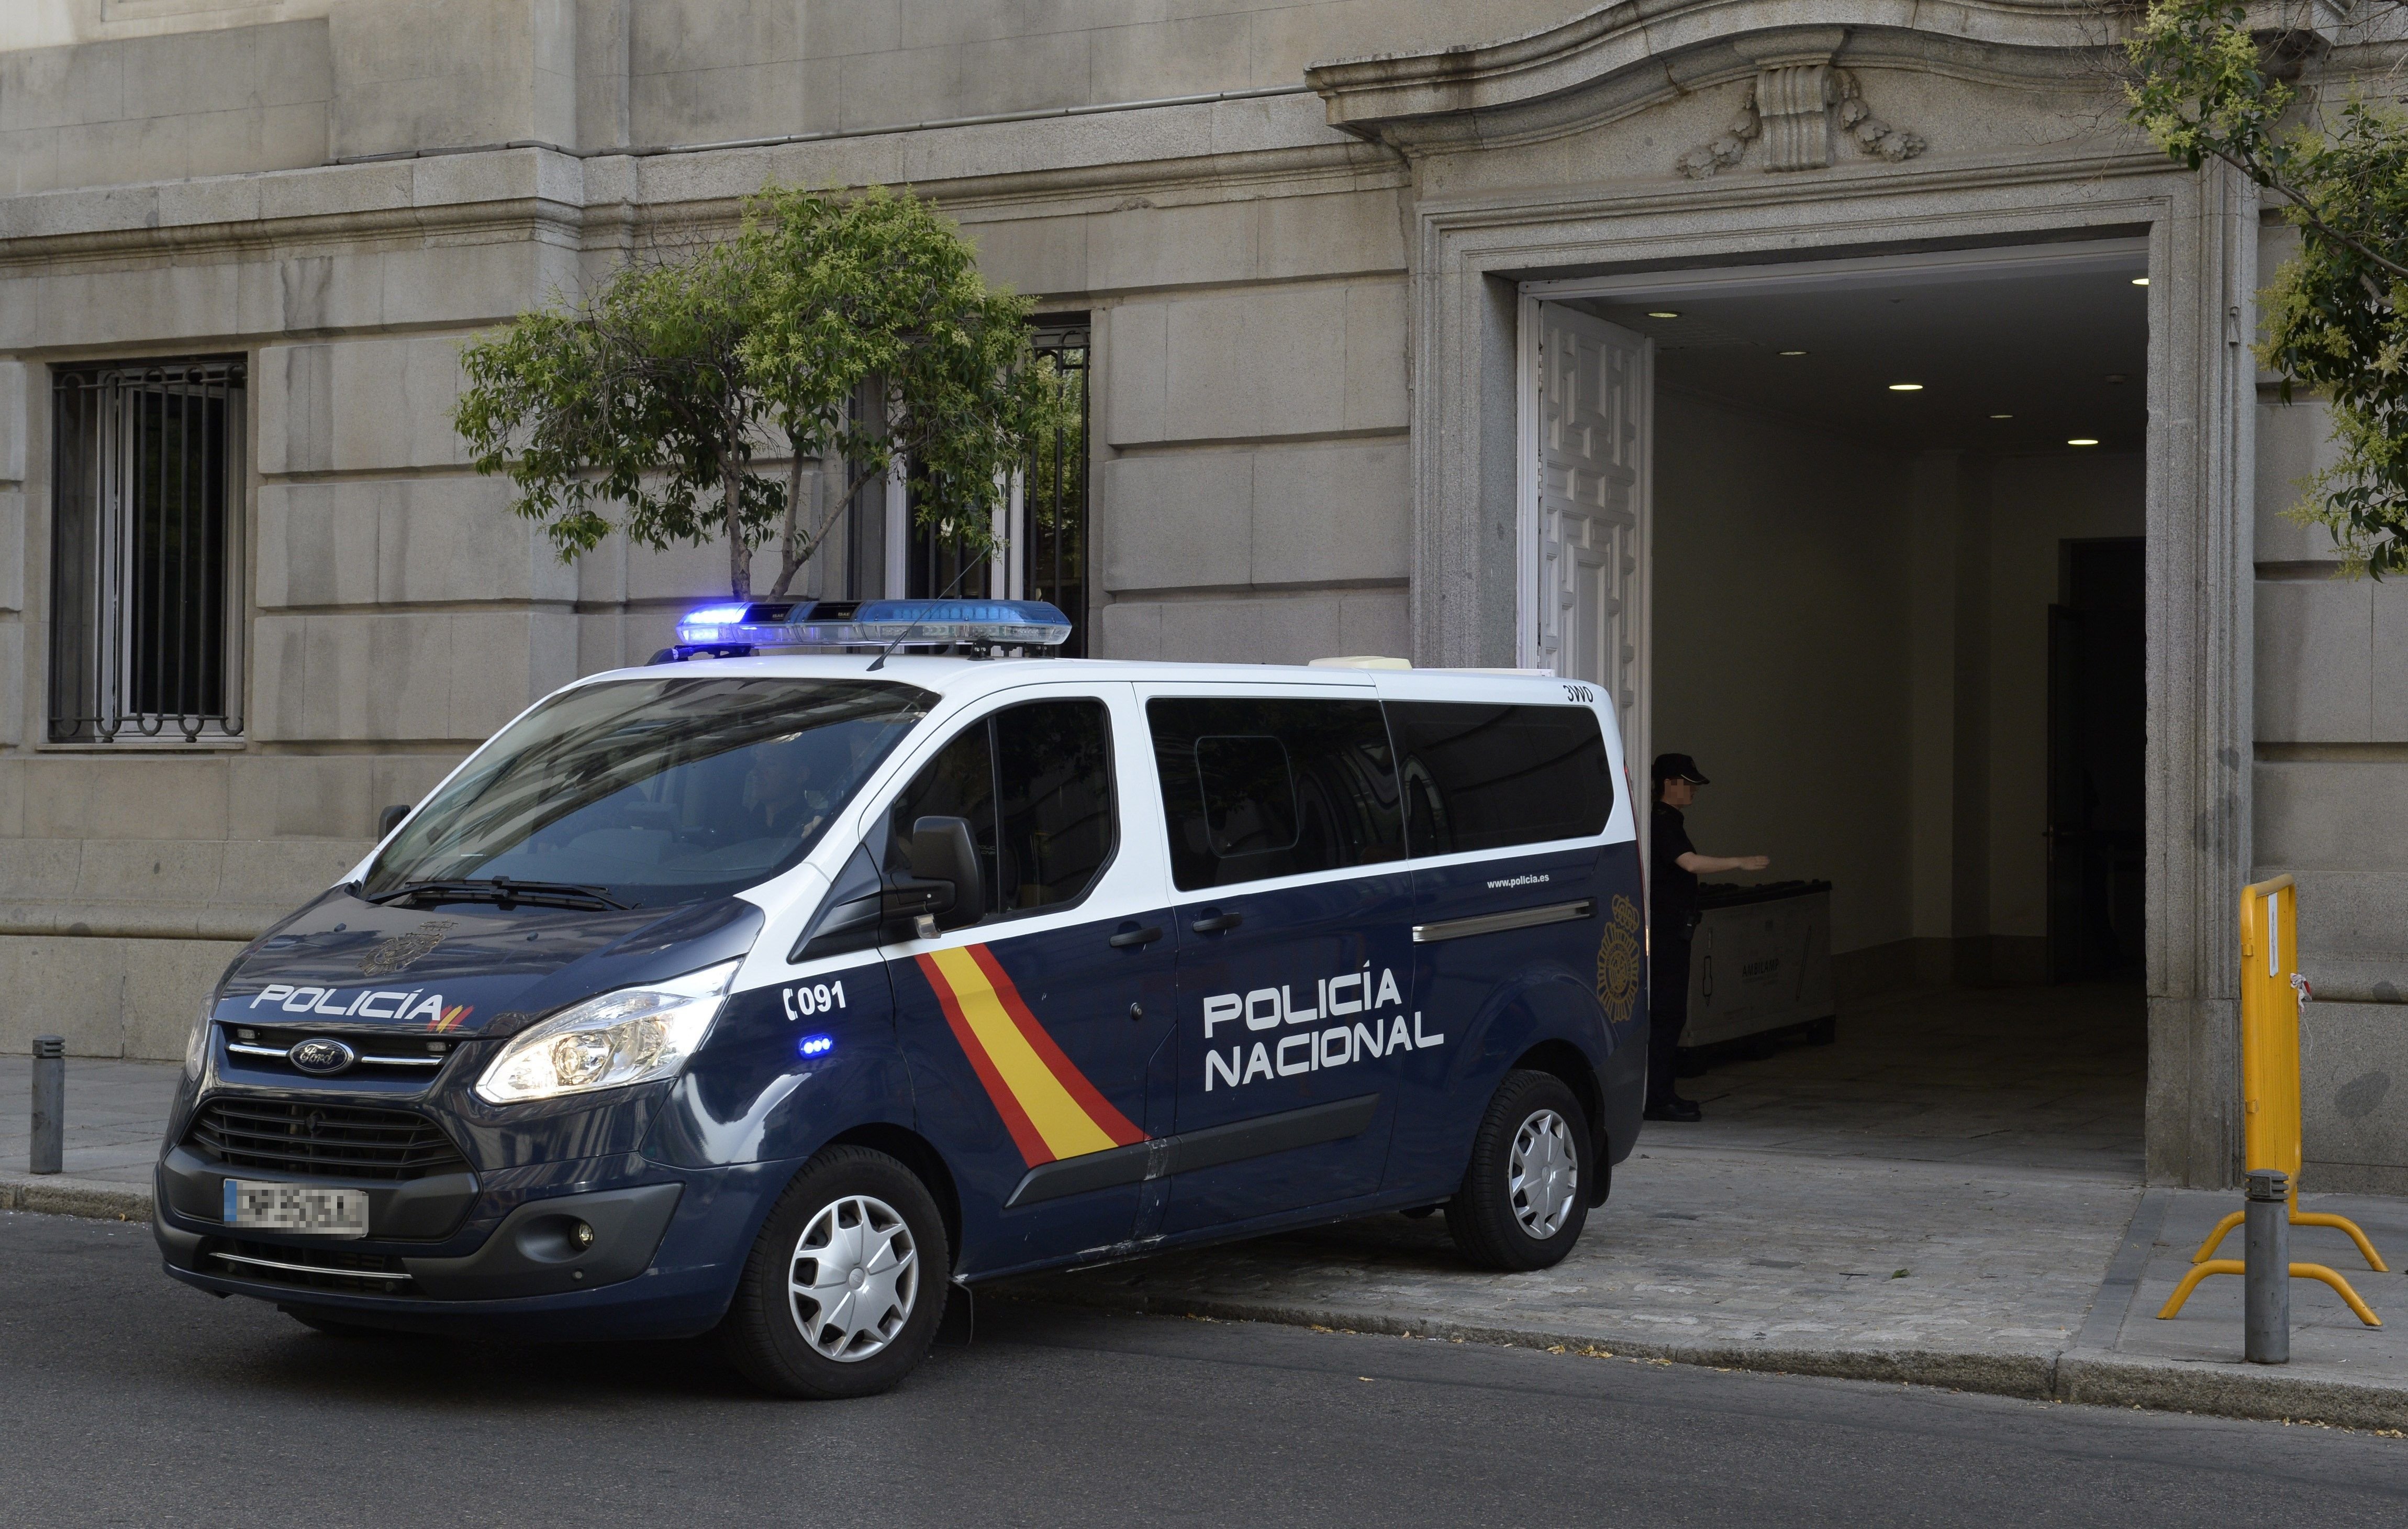 Sentència ferma de 'La Razón' i 'El Mundo': "El separatisme és una qüestió penal"